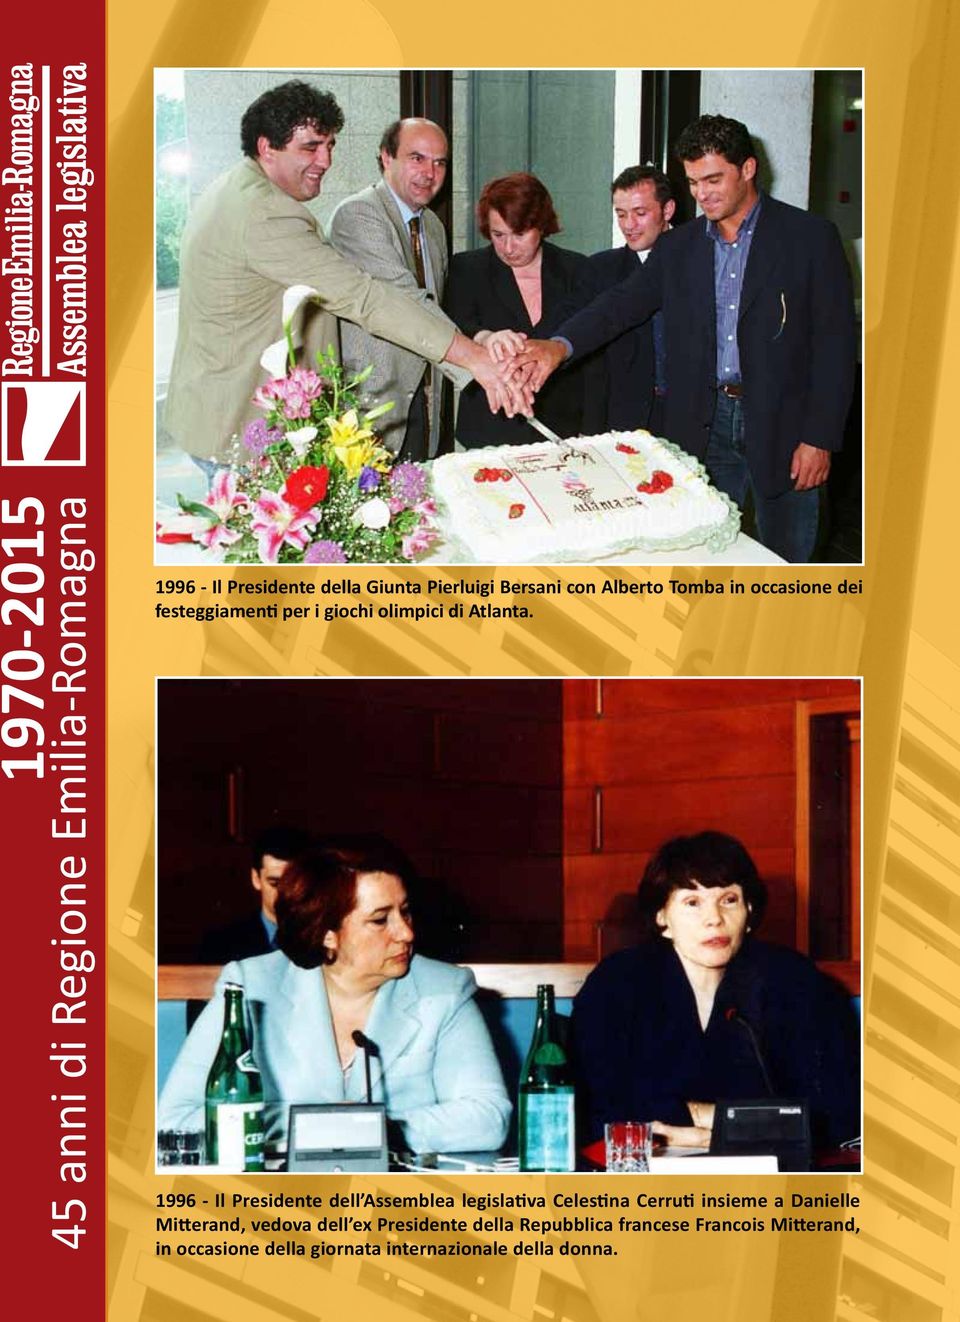 1996 - Il Presidente dell Assemblea legislativa Celestina Cerruti insieme a Danielle